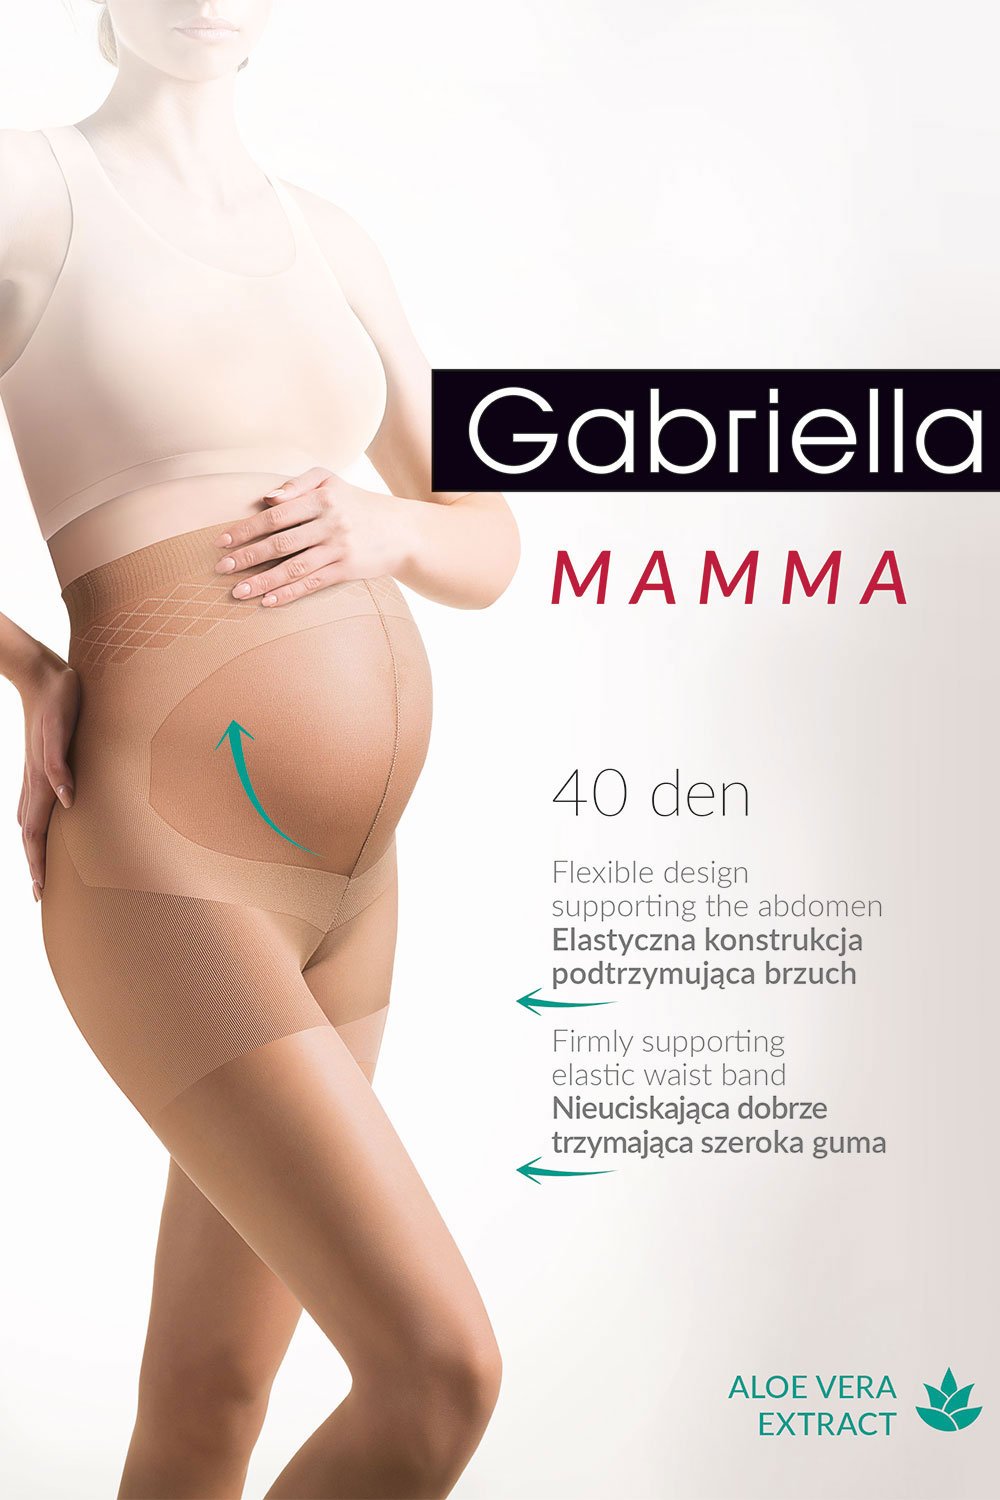 Rasjtopy ciążowe Gabriella Mamma